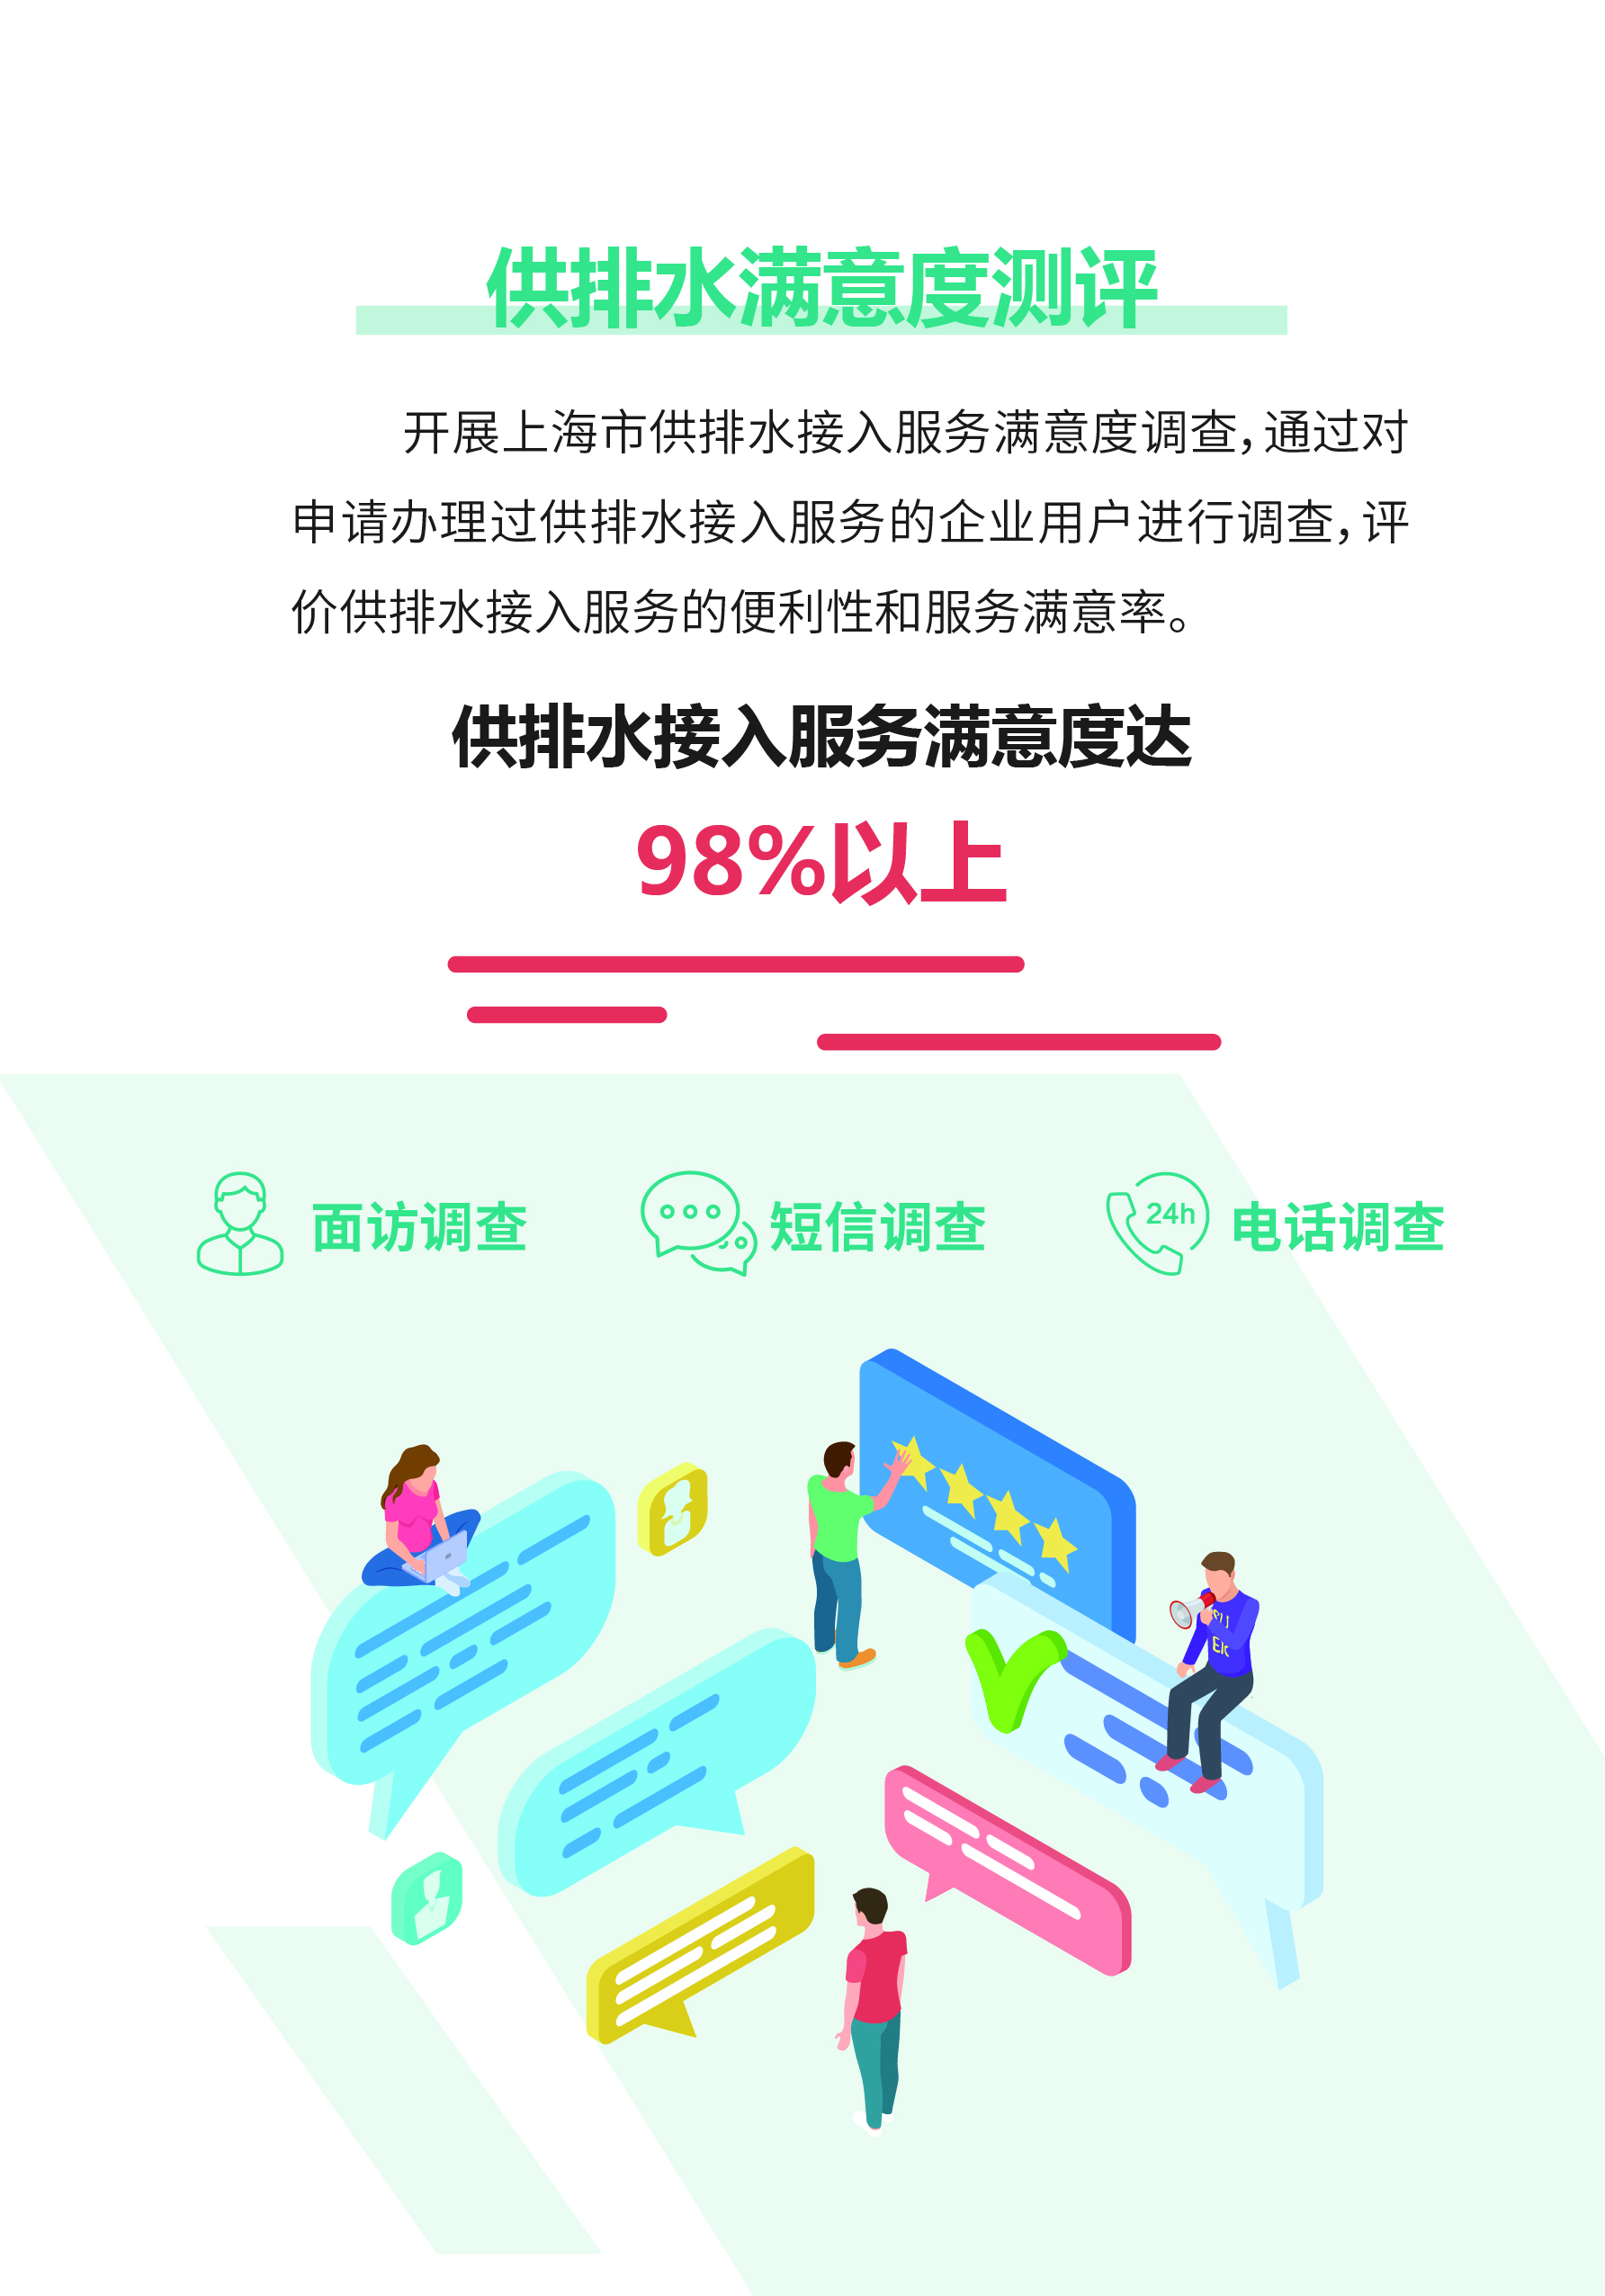 0515-上海供排水接入改革6.0版_页面_07.jpg